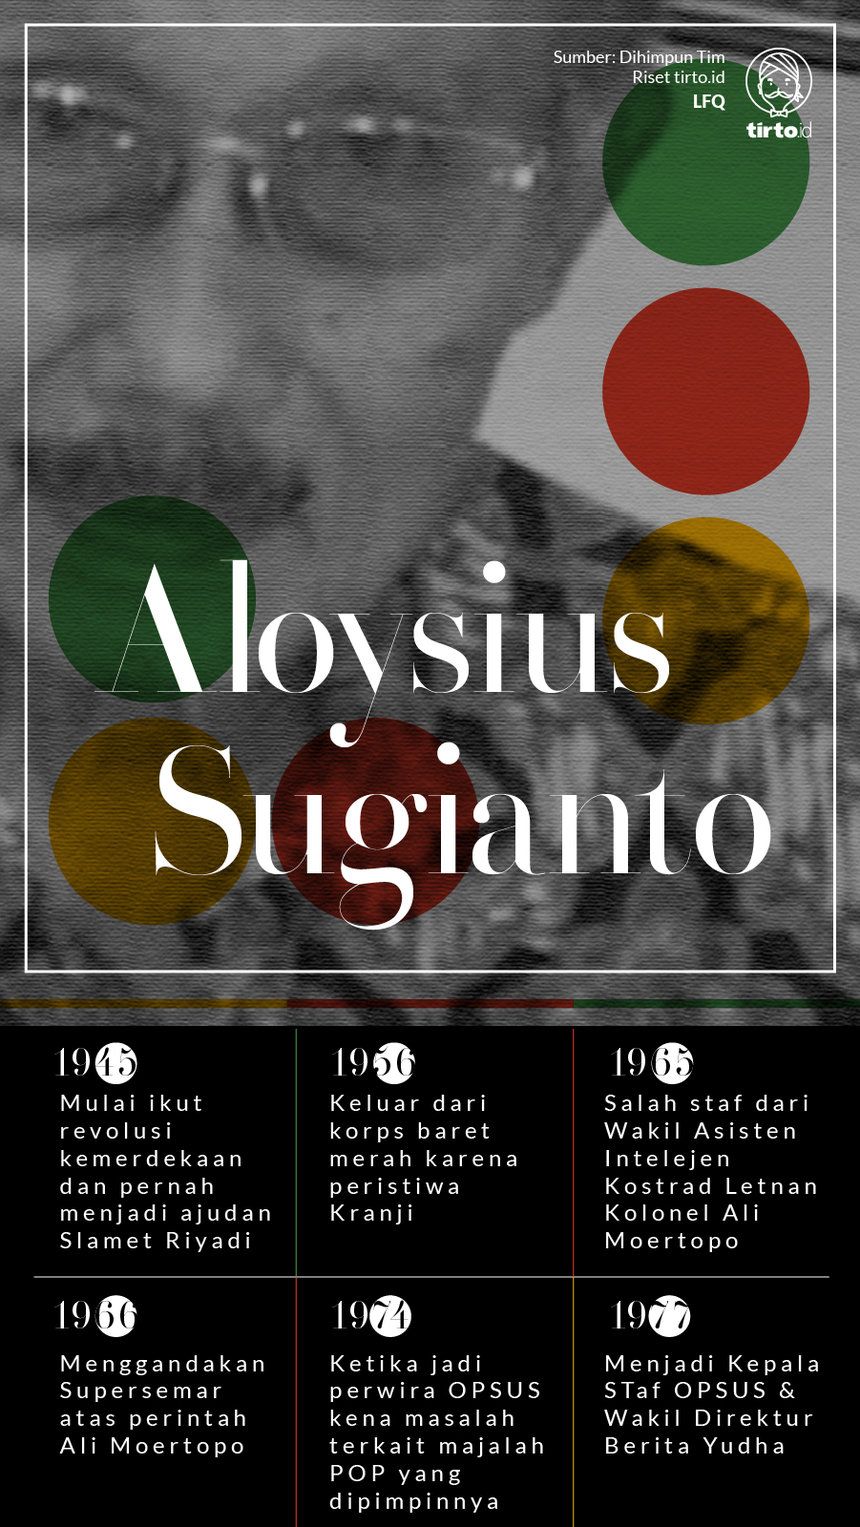 Infografik Aloysius Sugianto